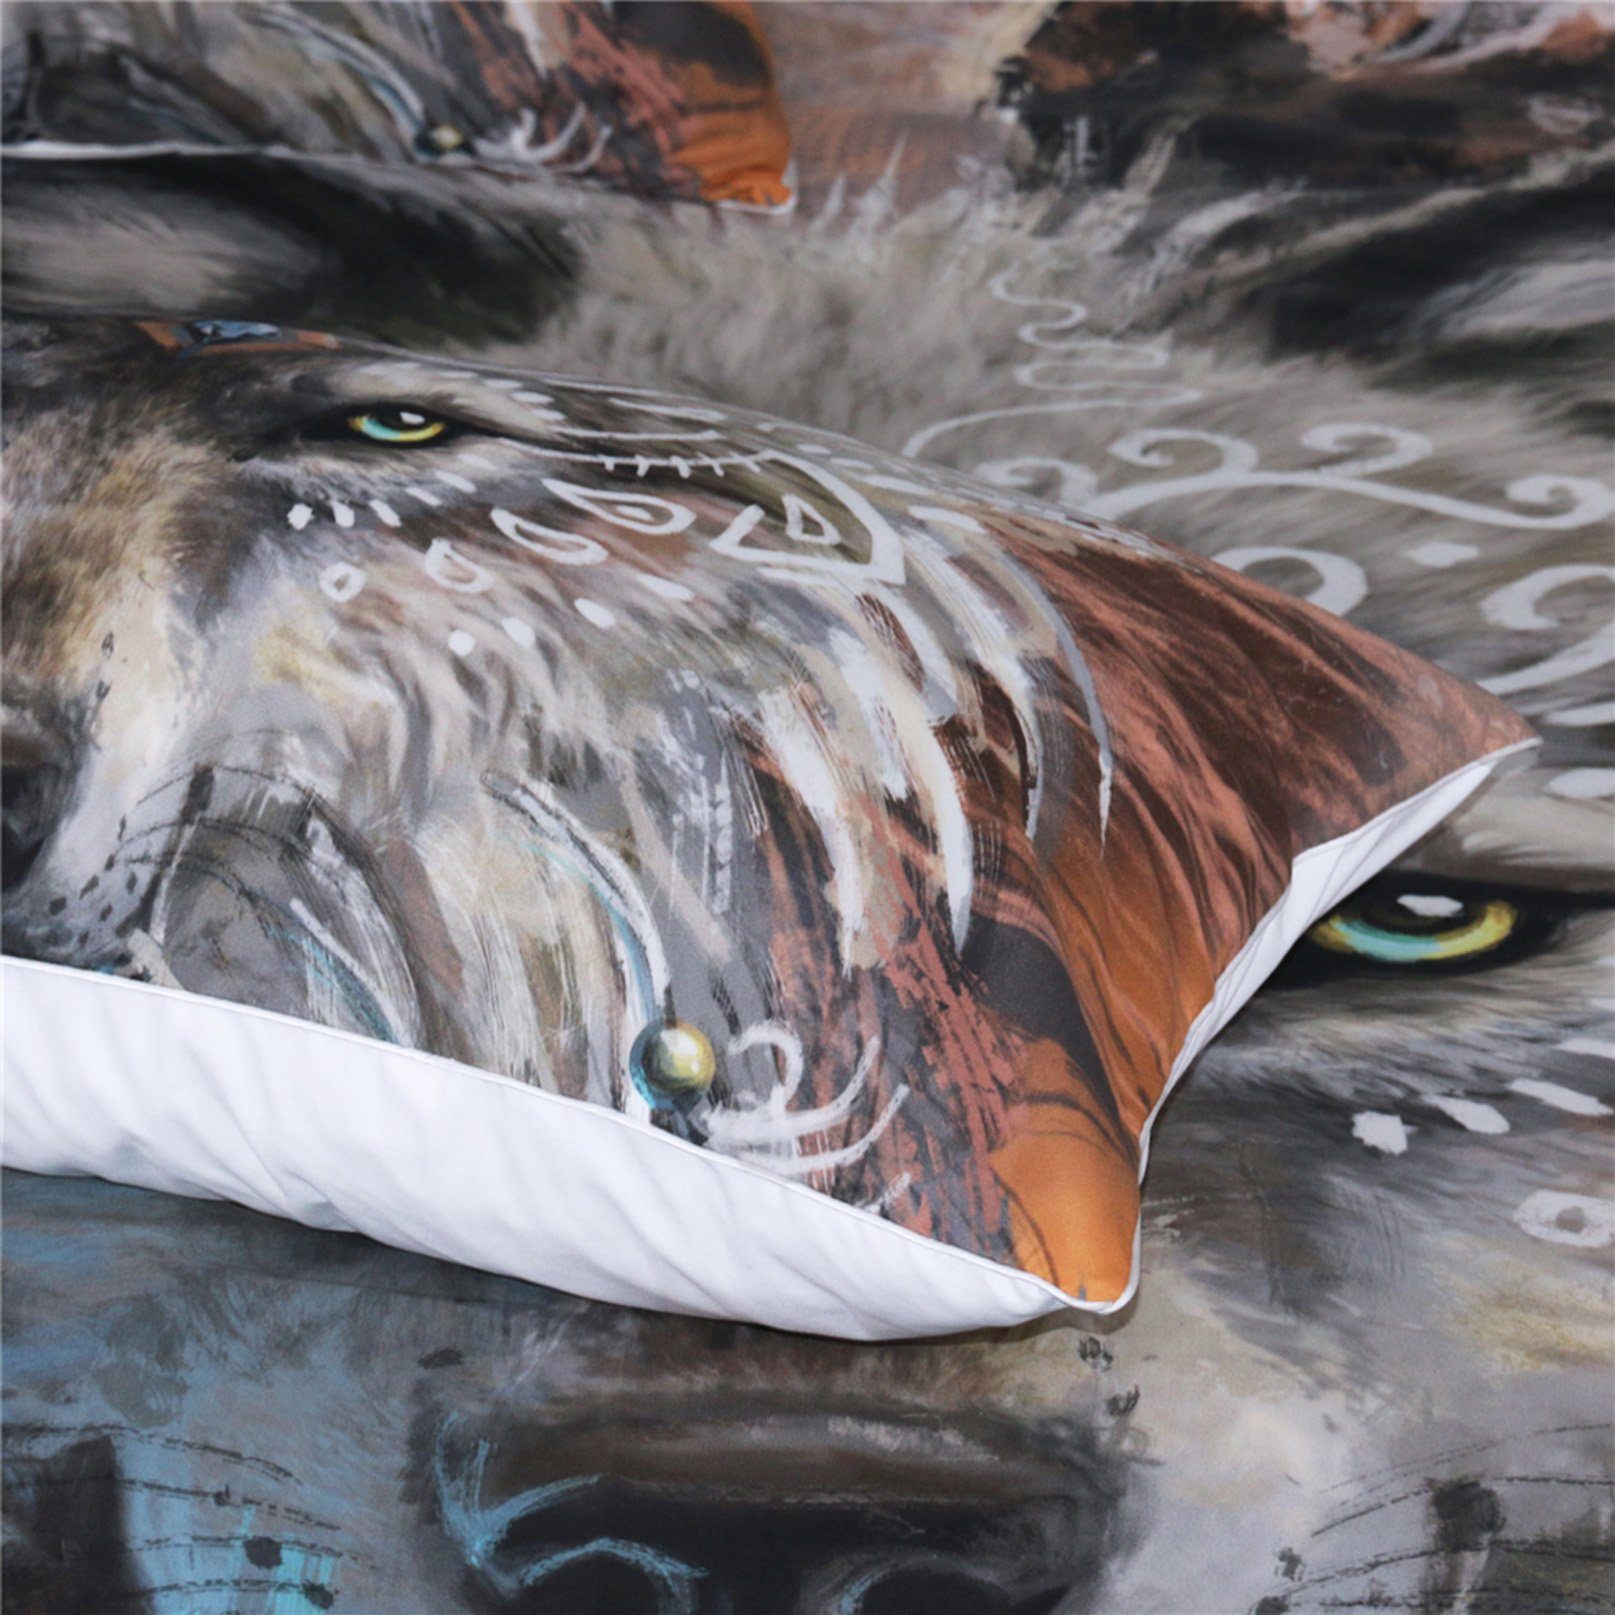 3D Wolf Warrior 164 Bed Pillowcases Quilt Wallpaper AJ Wallpaper 